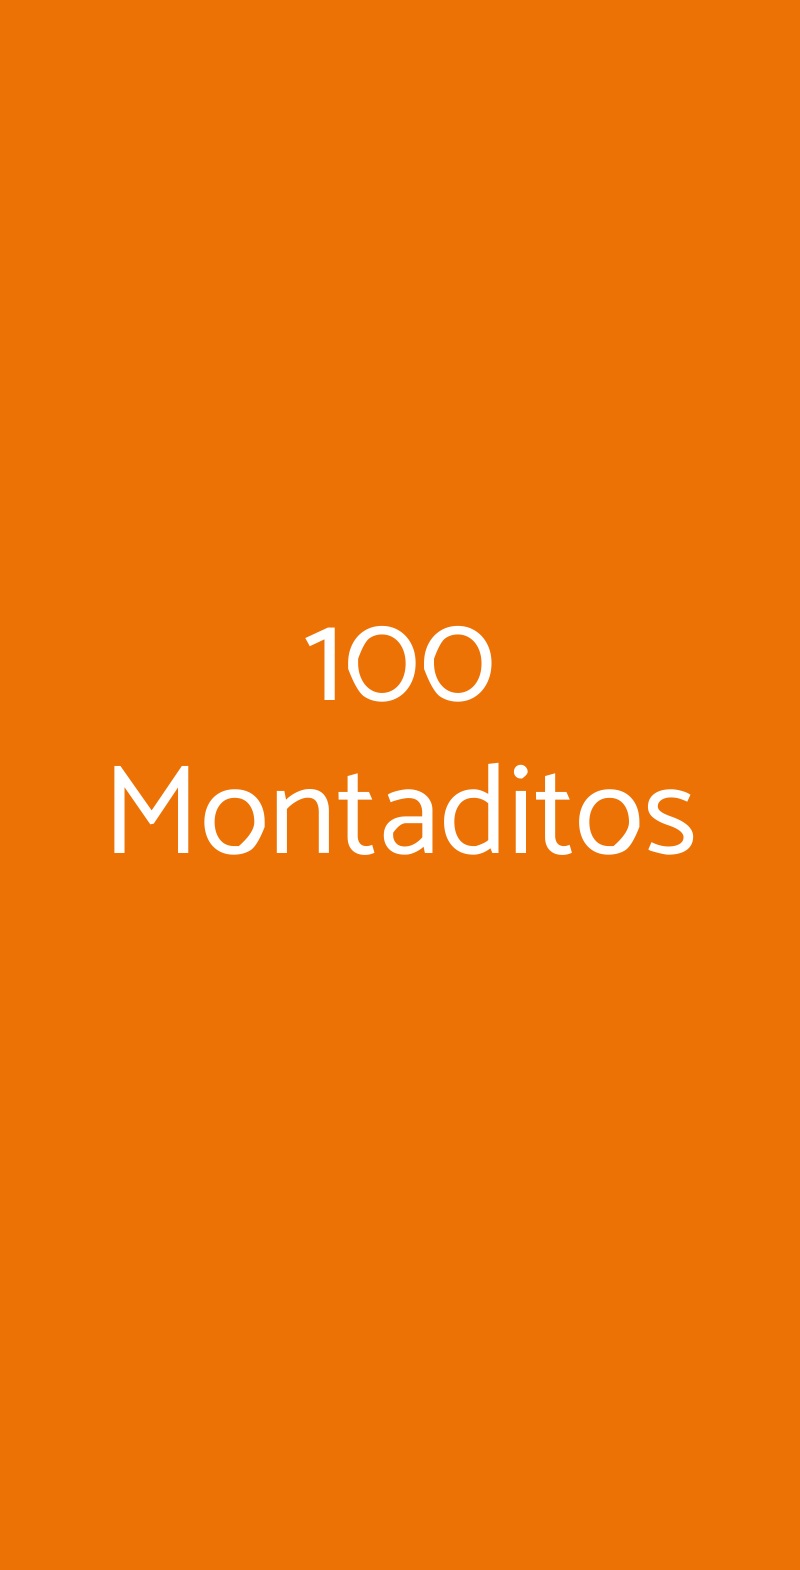 100 Montaditos  Bologna menù 1 pagina